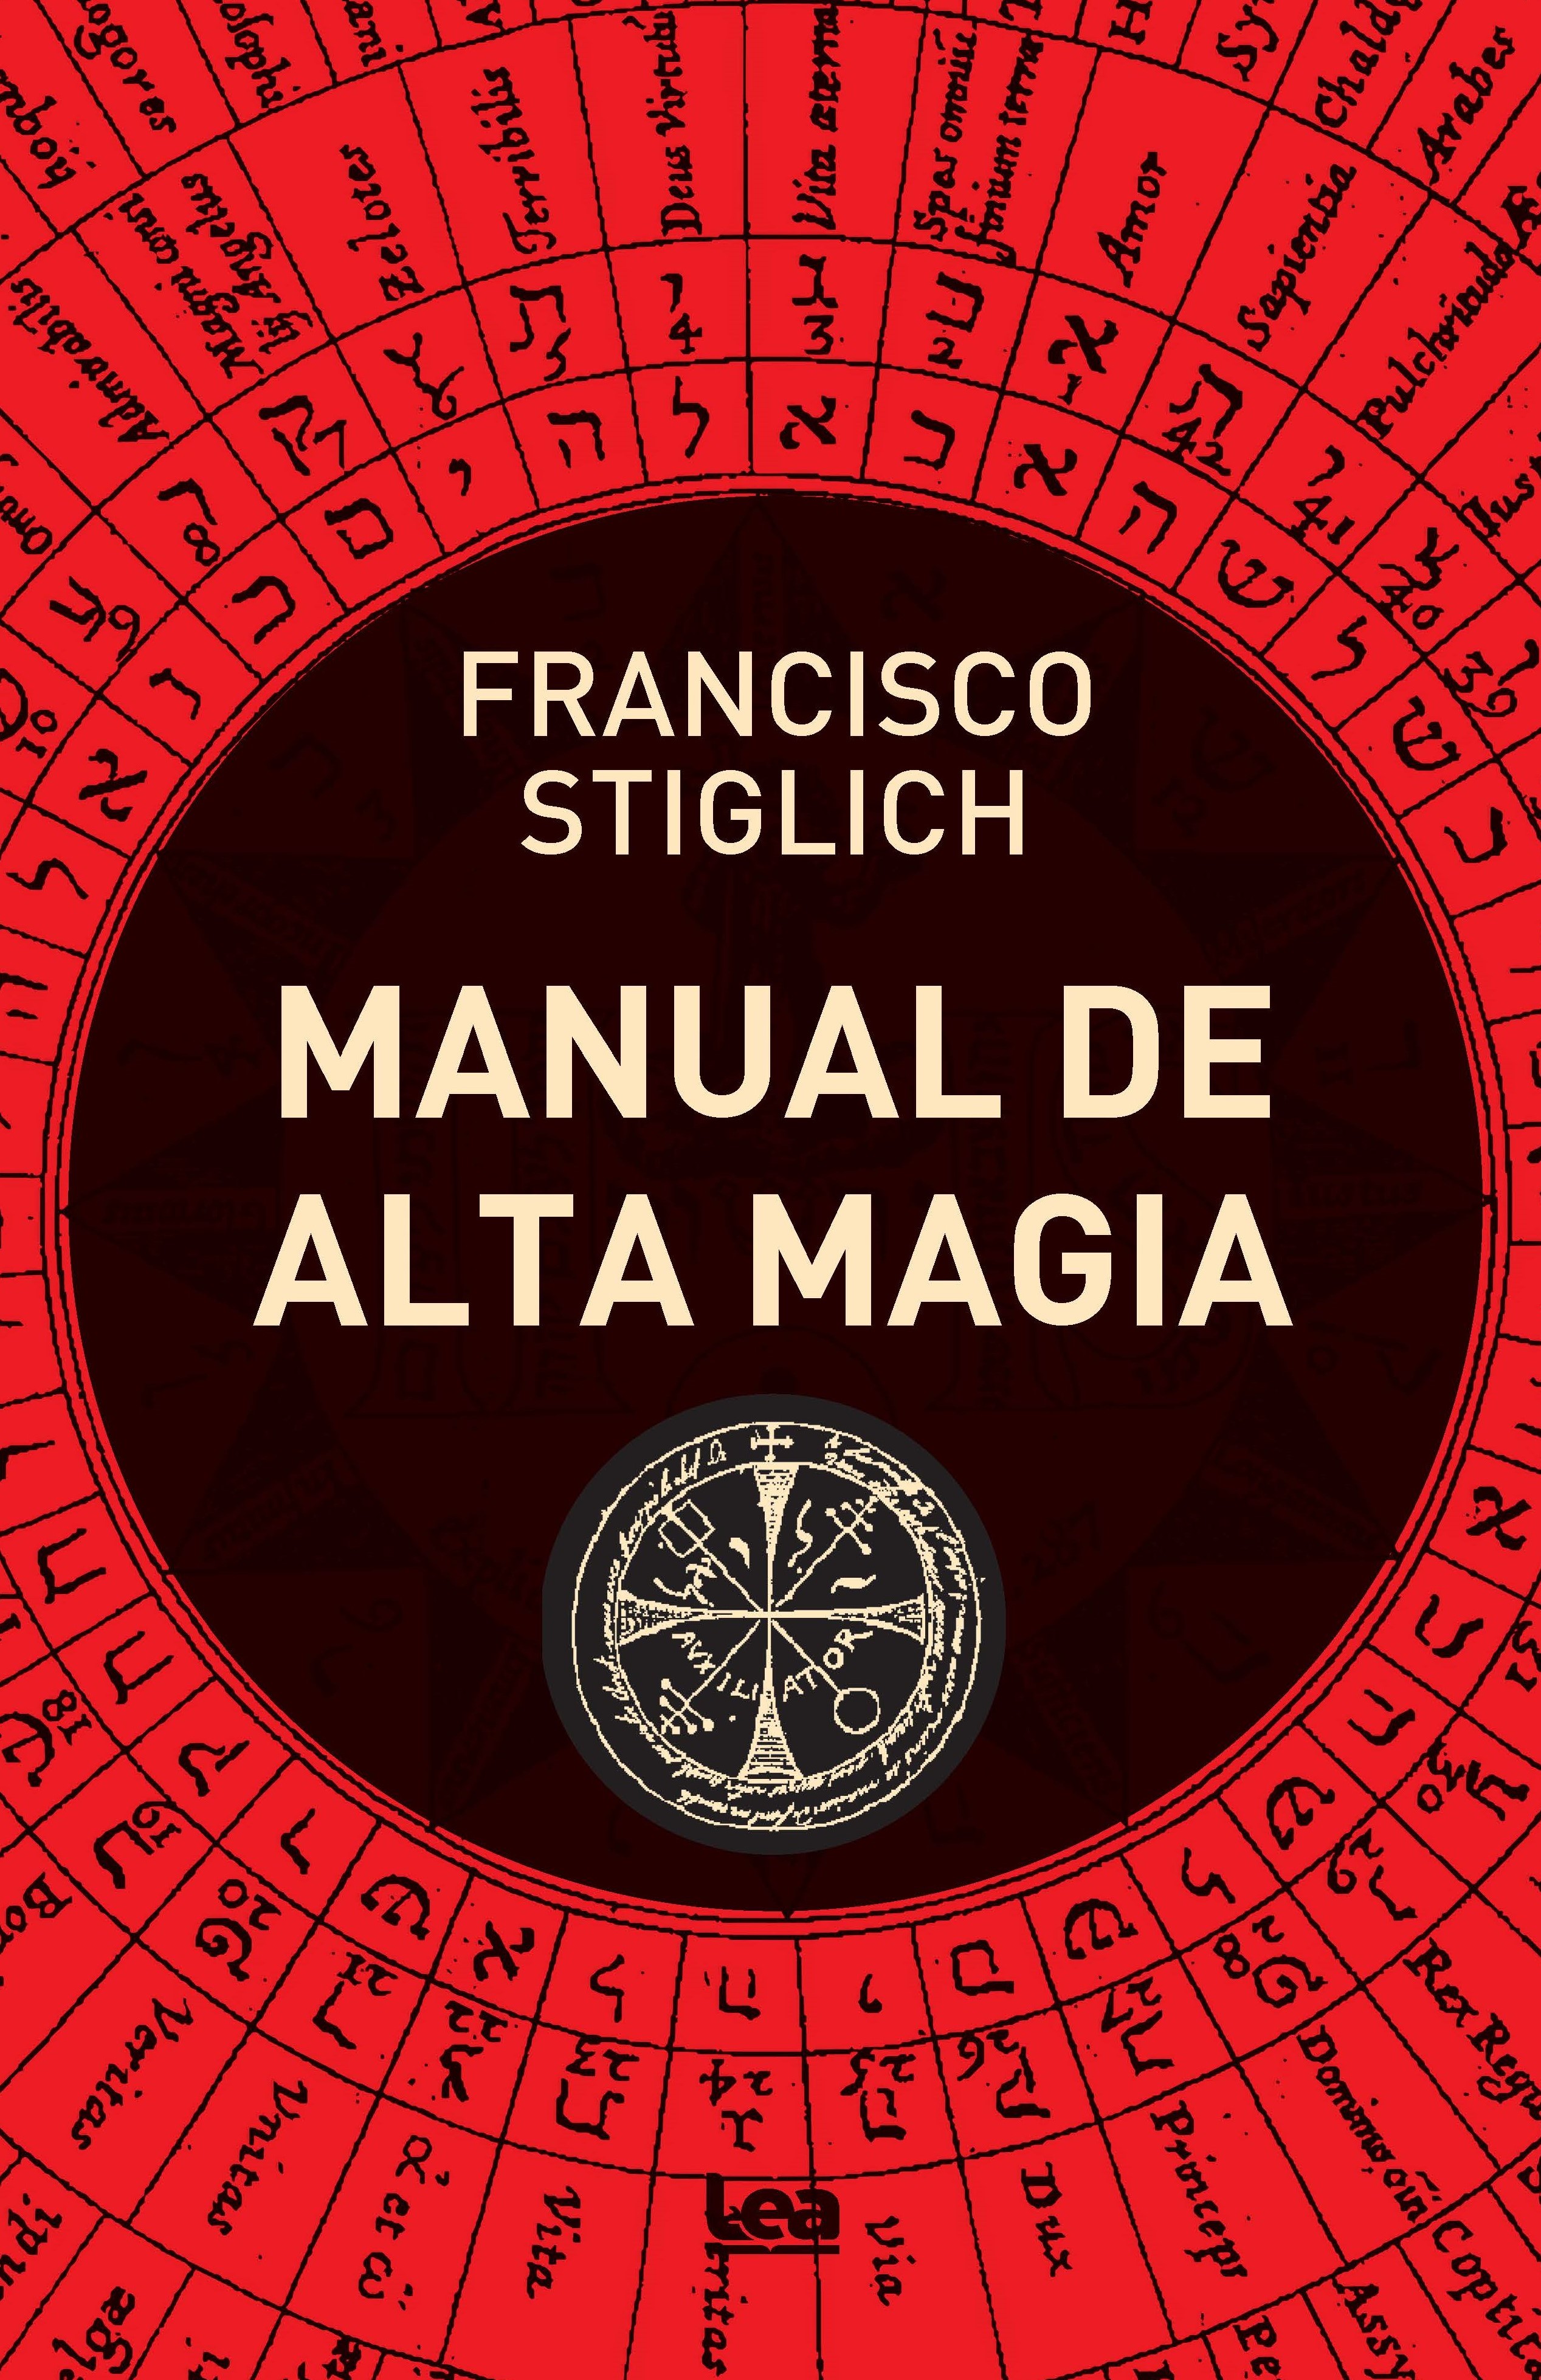 moral oler Limpia el cuarto Manual de alta magia - Ediciones LEA España